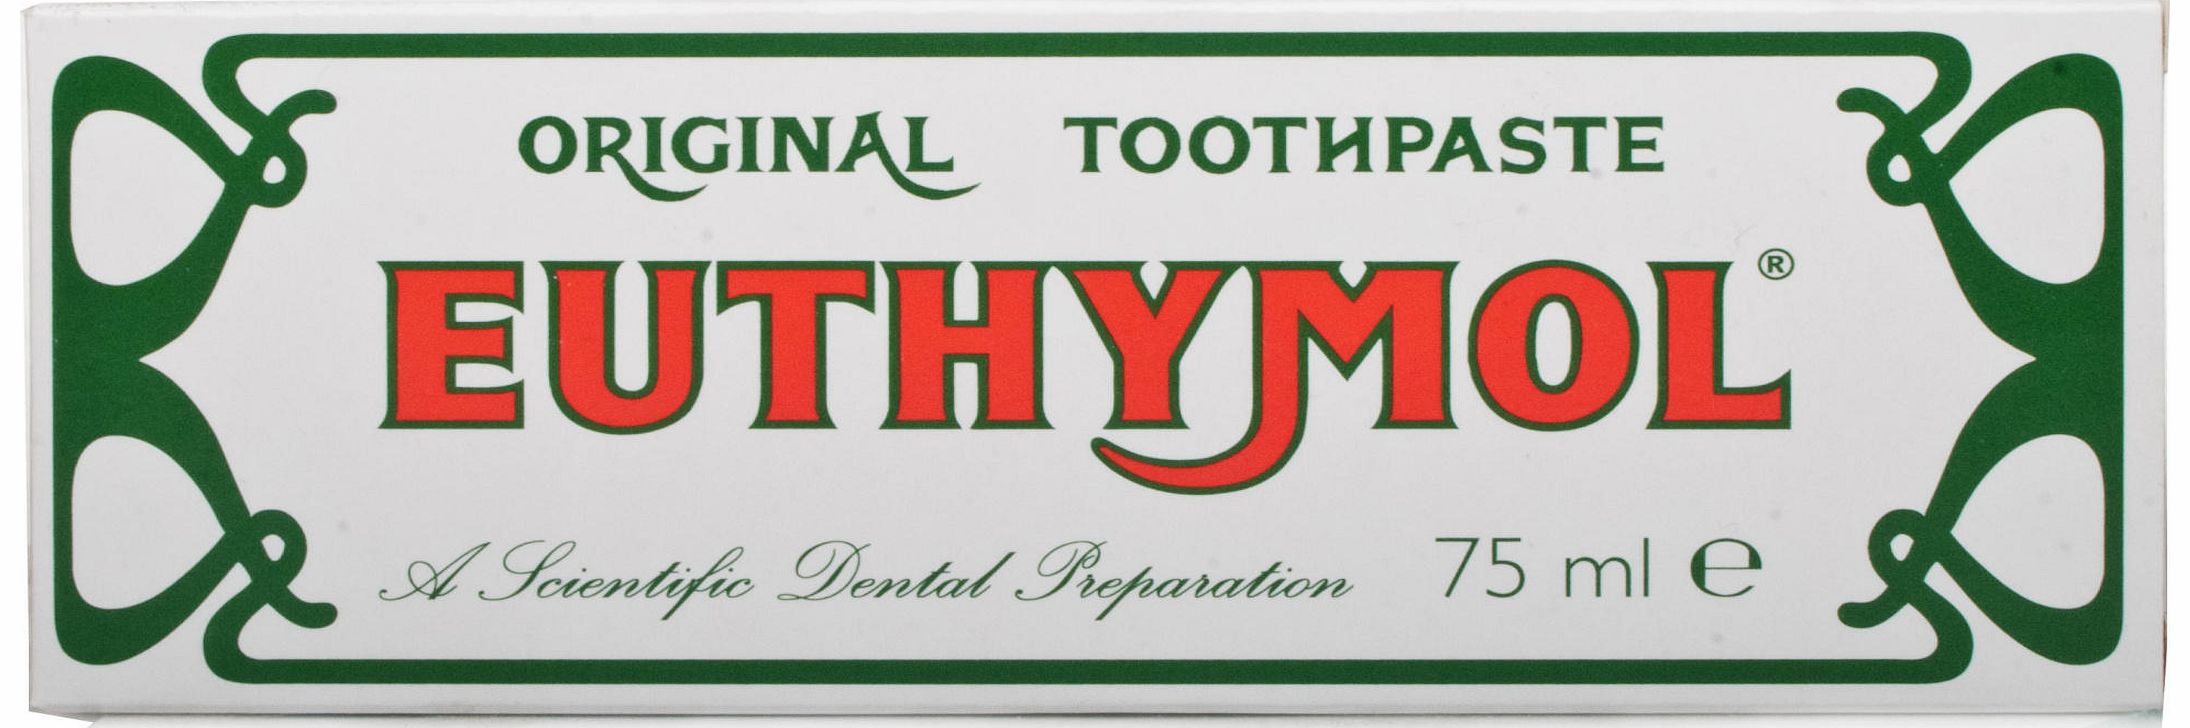 Original Toothpaste